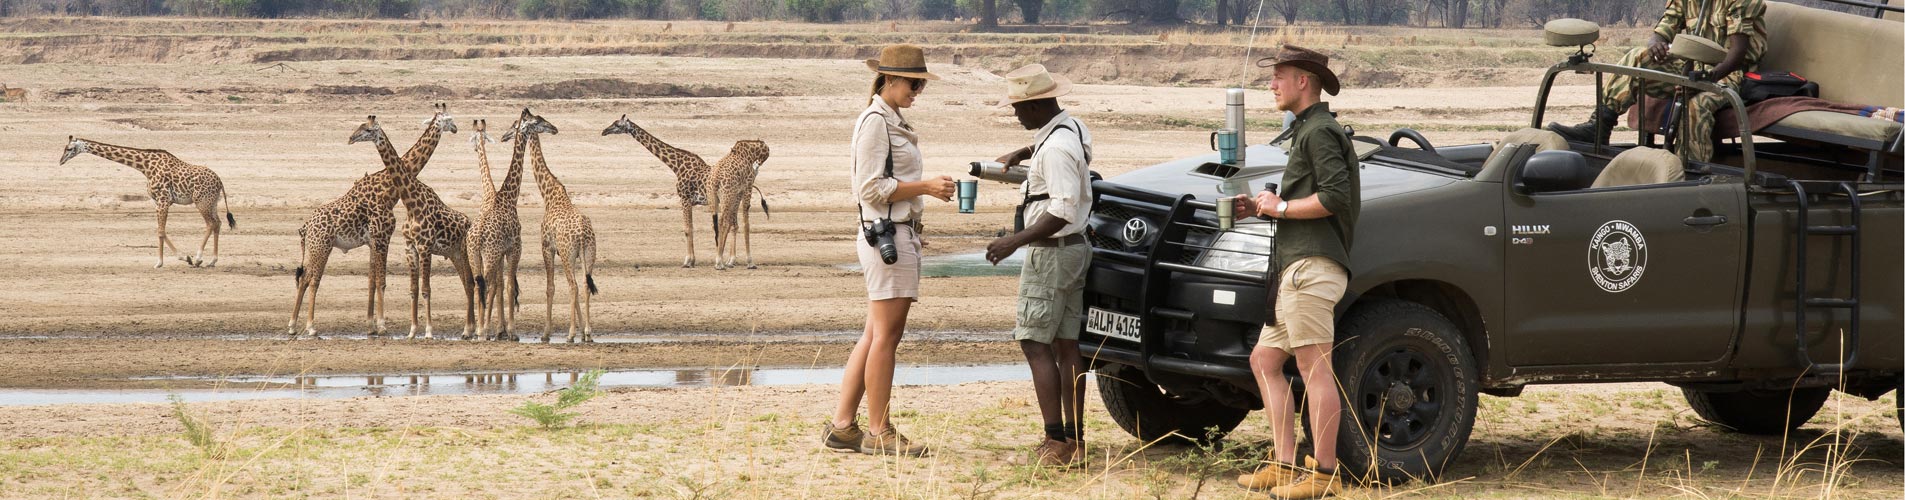 Tea With Giraffes on Zambia Safari